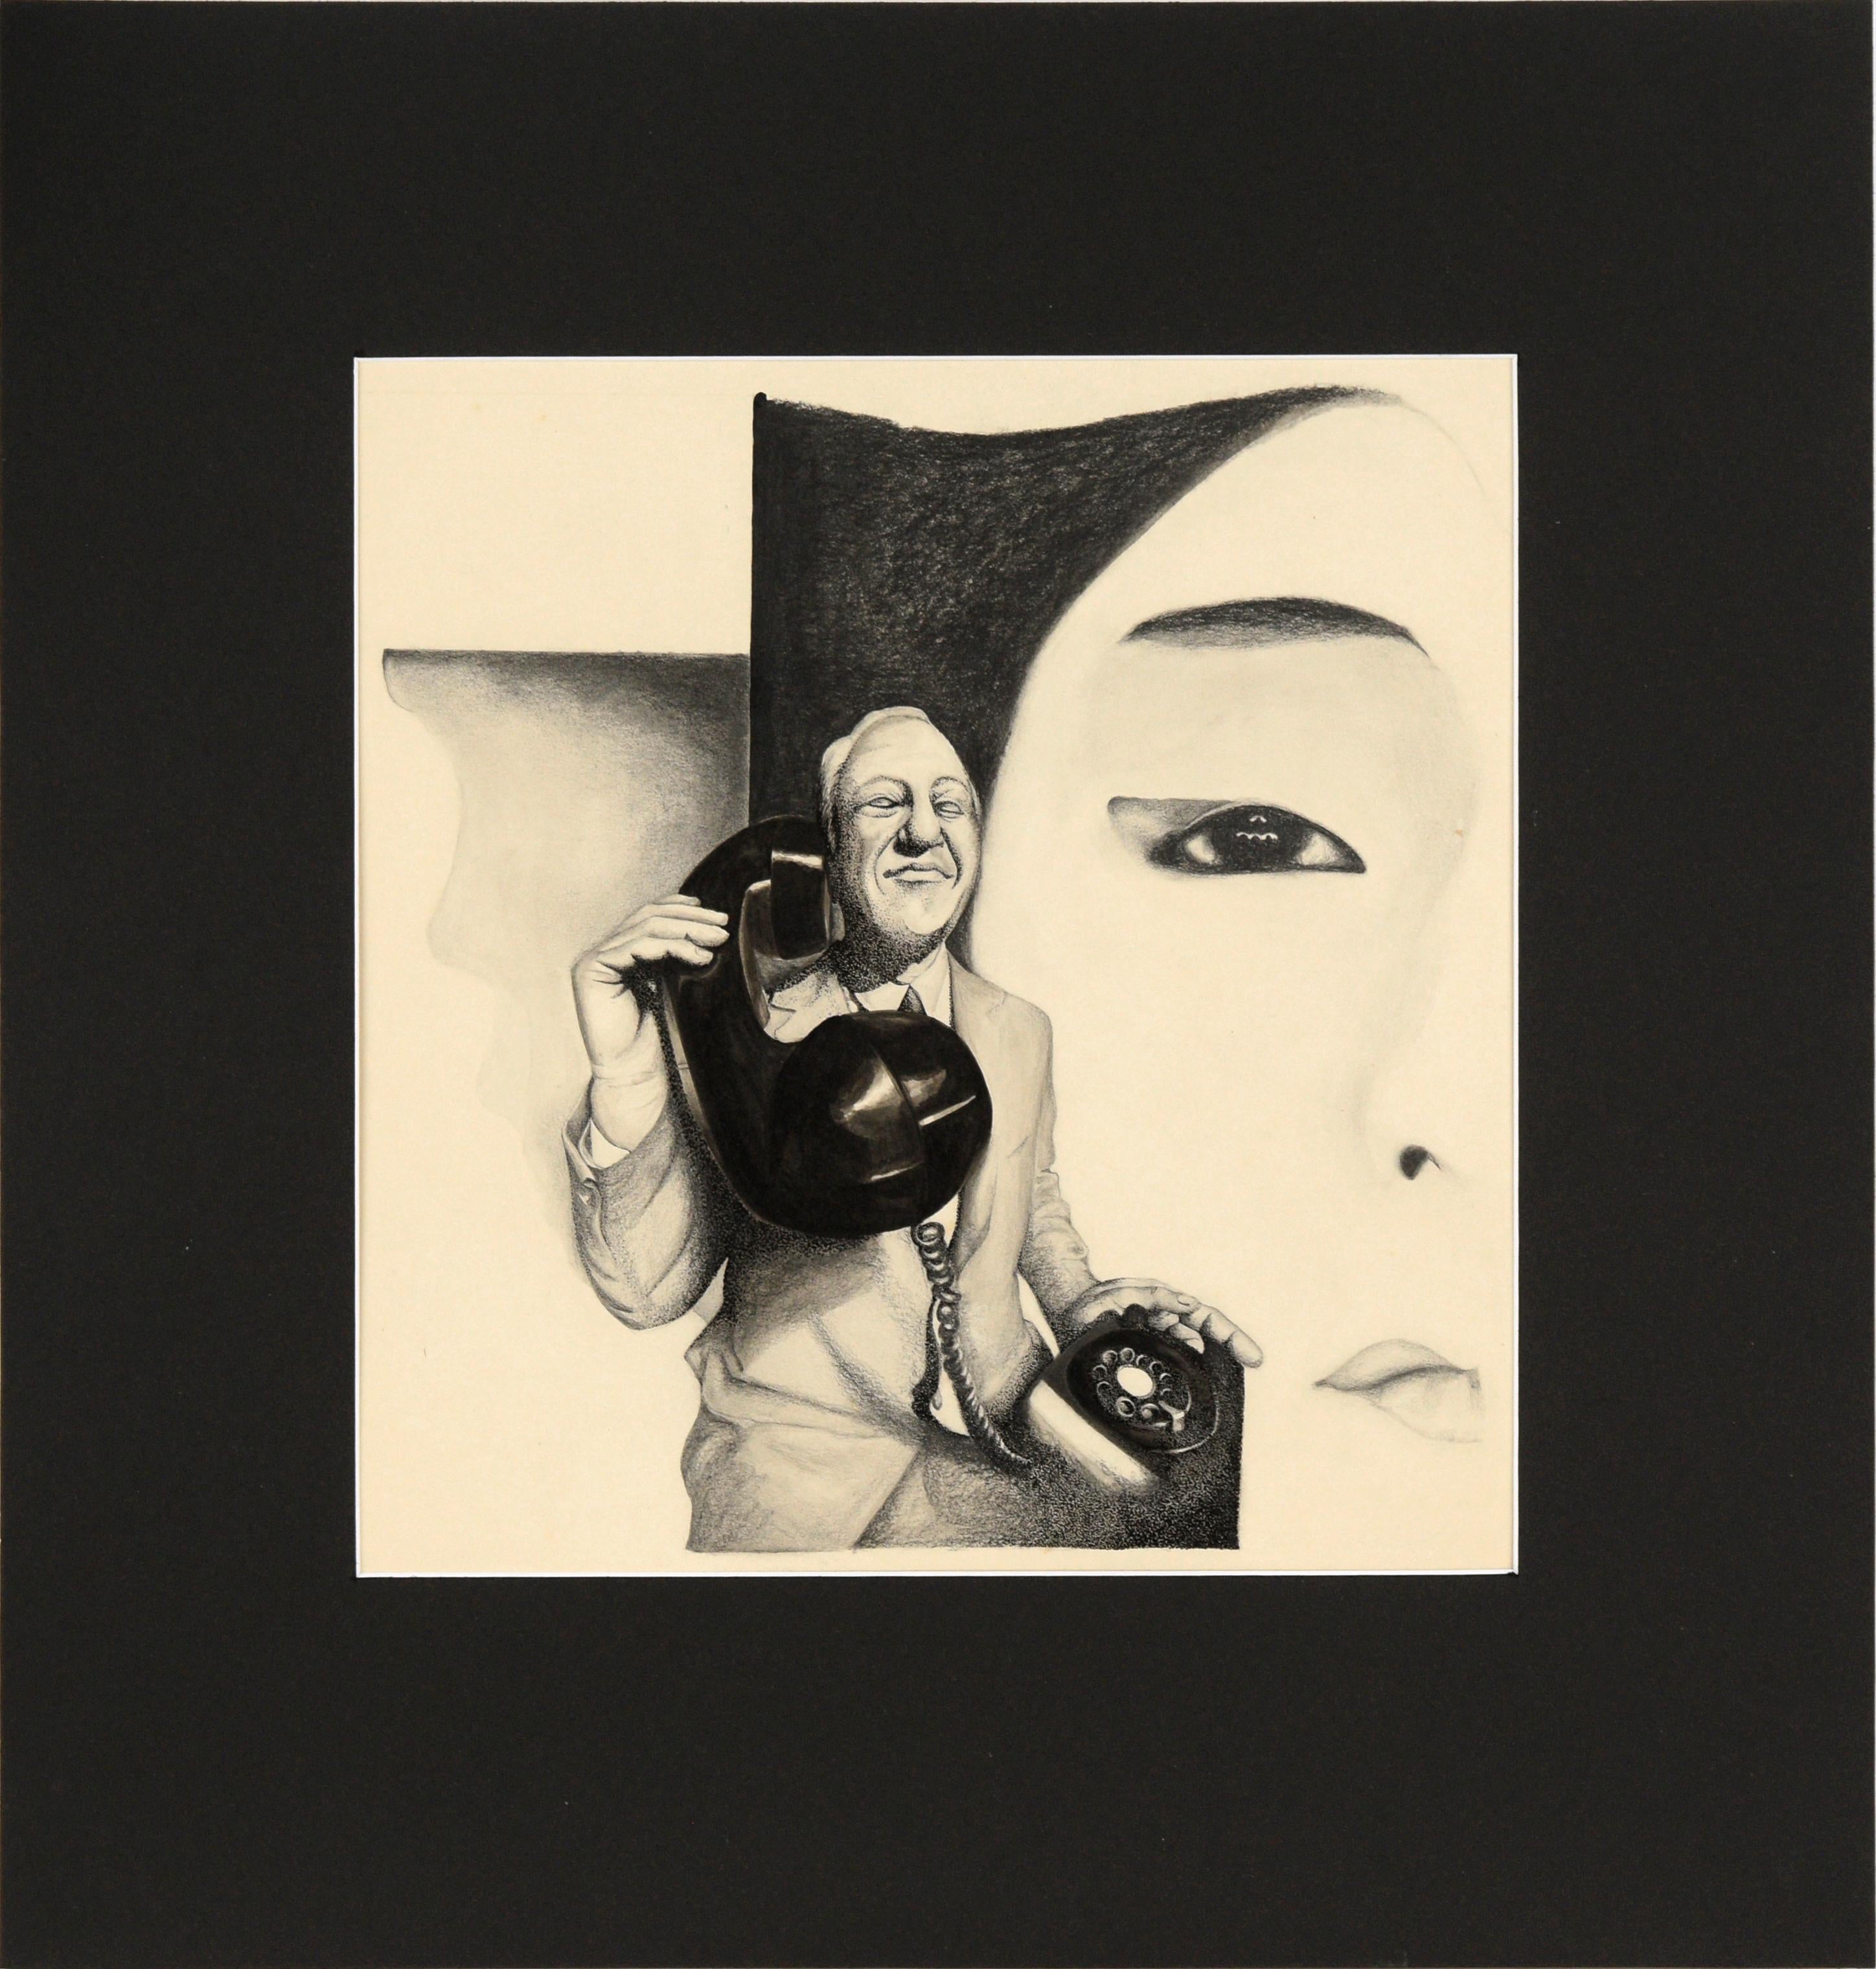 Man with Telephone - Surrealistisches Schwarz-Weiß-Porträt in Tinte auf Papier